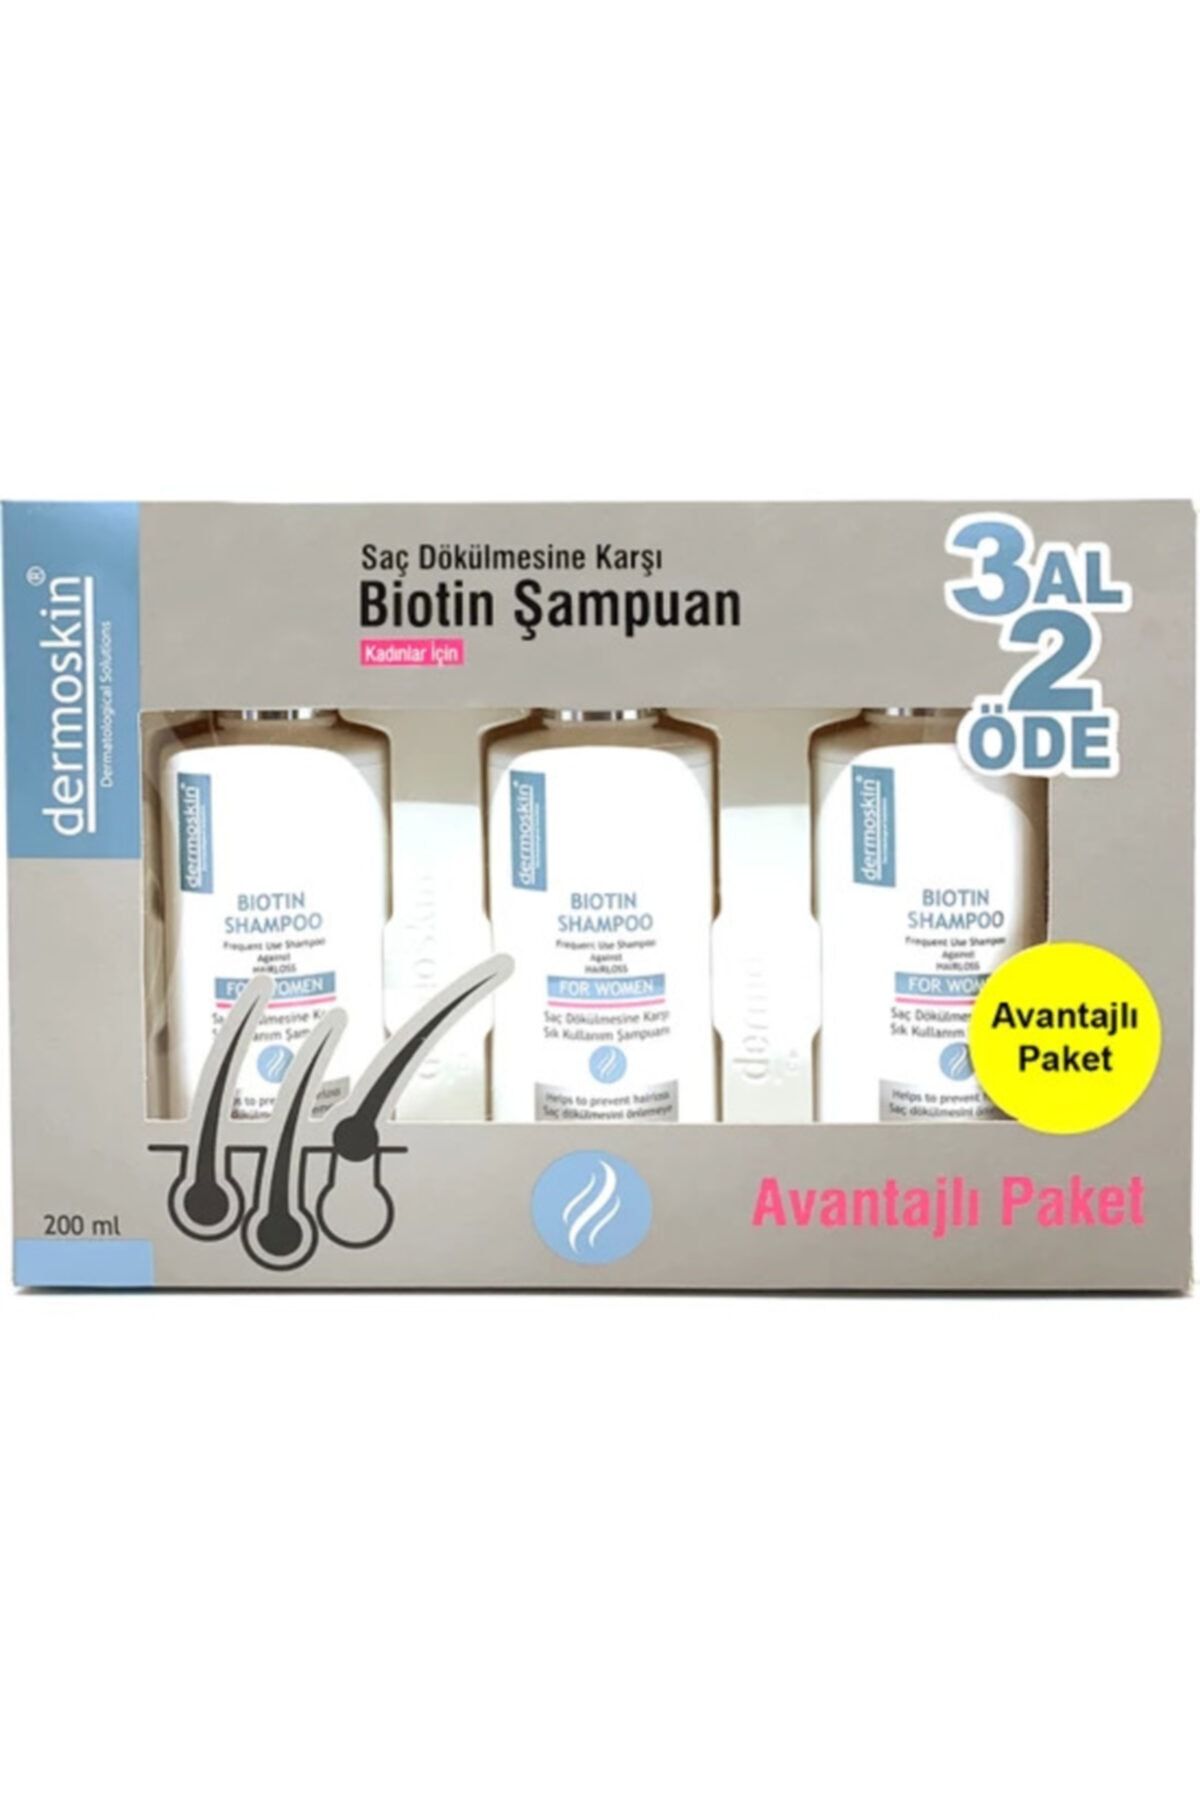 Dermoskin Biotin Şampuan Kadın 3 Al 2 Öde Avantajlı Paket